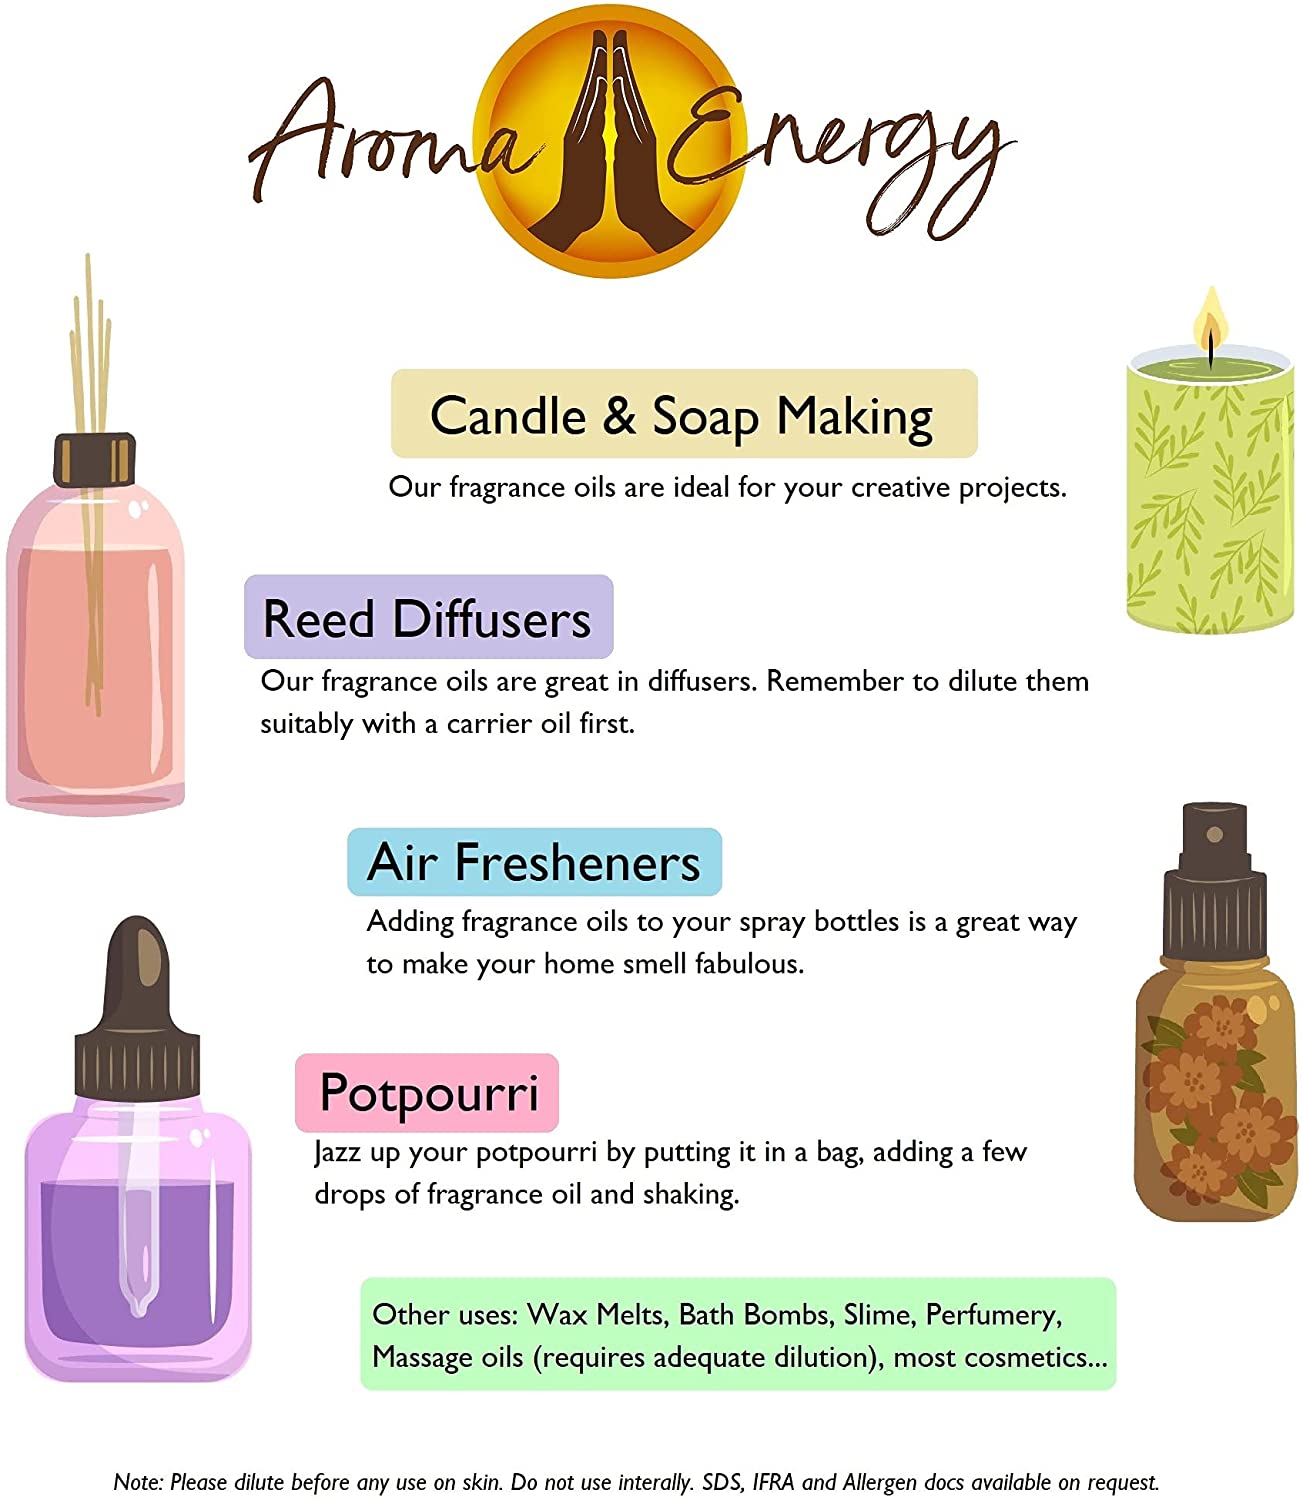 Camomile Fragrance Oil - Aroma Energy